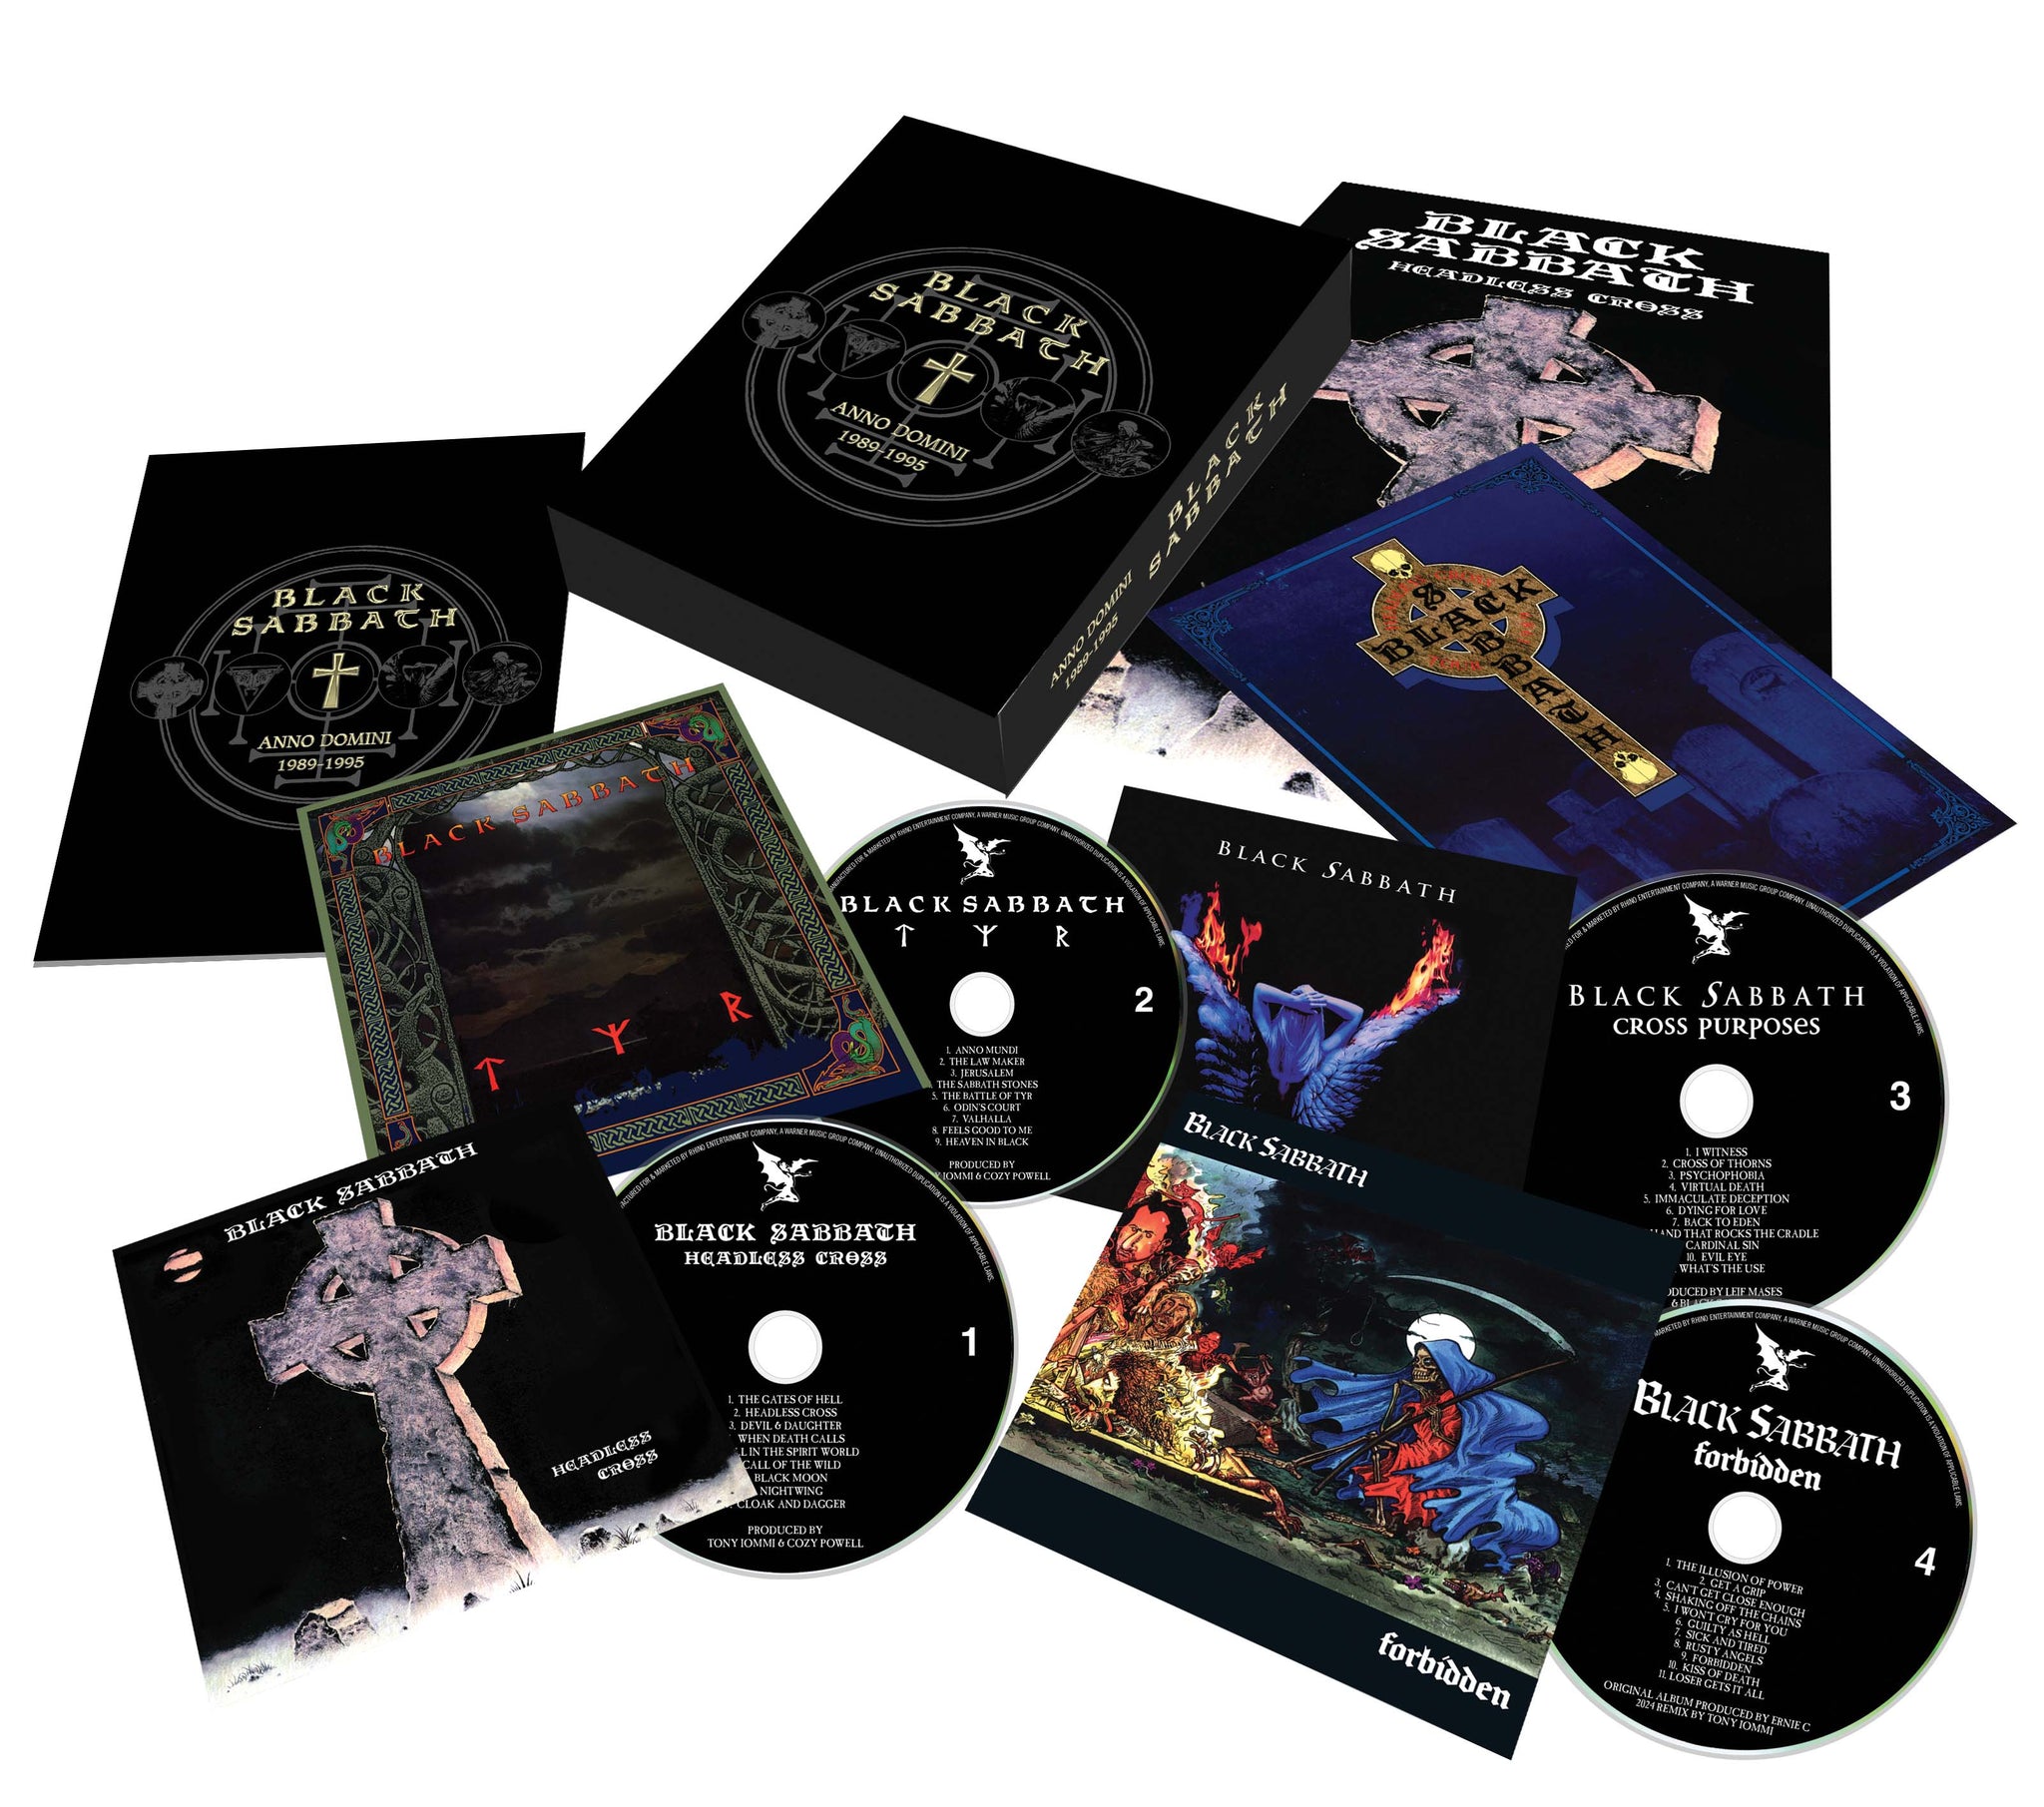 Black Sabbath "Anno Domini: 1989-1995" Super Deluxe 4 CD Box Set - PRE-ORDER